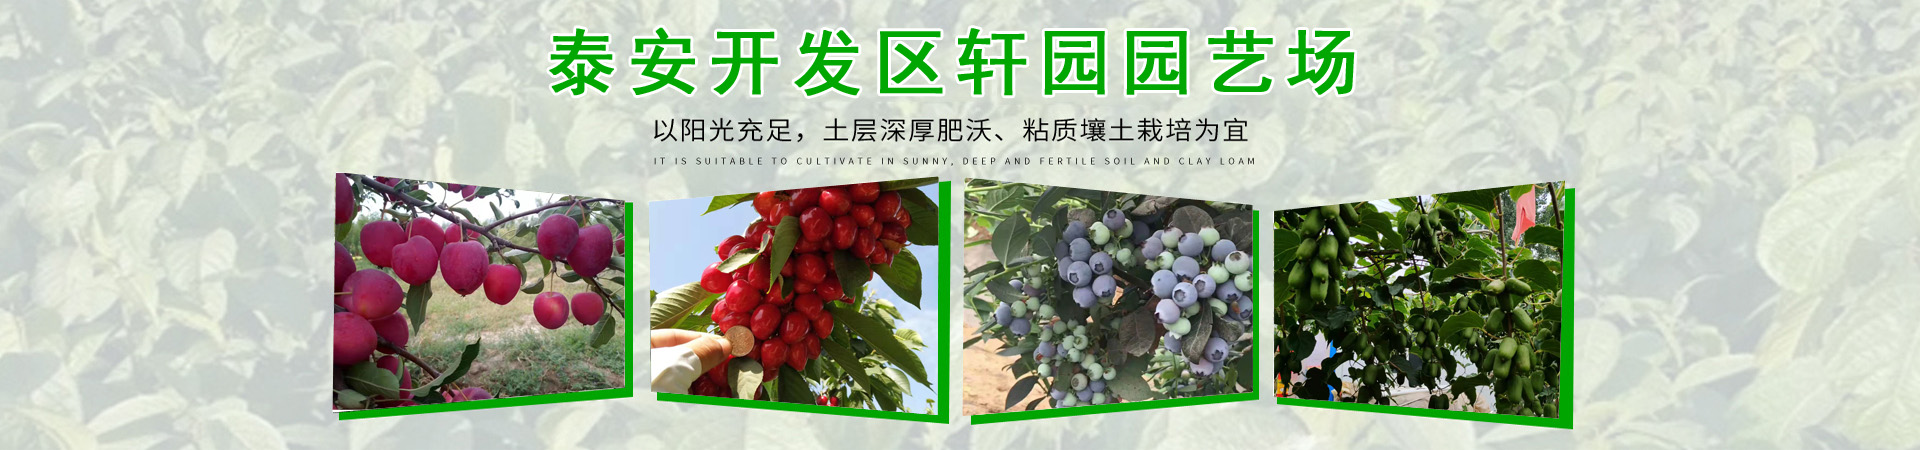 蓝莓苗、北京本地蓝莓苗、北京、北京蓝莓苗